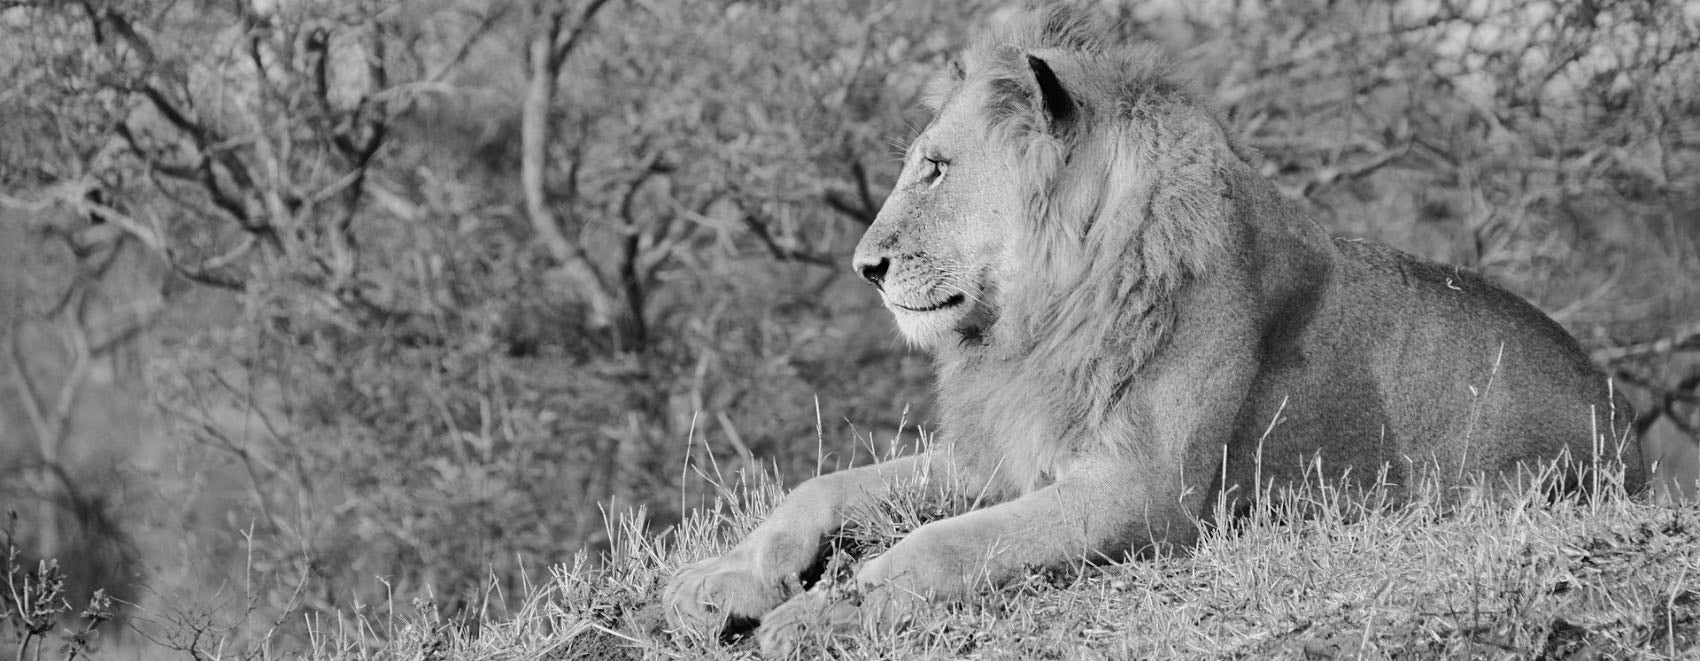 Roi Lion majestueux dans la brousse africaine